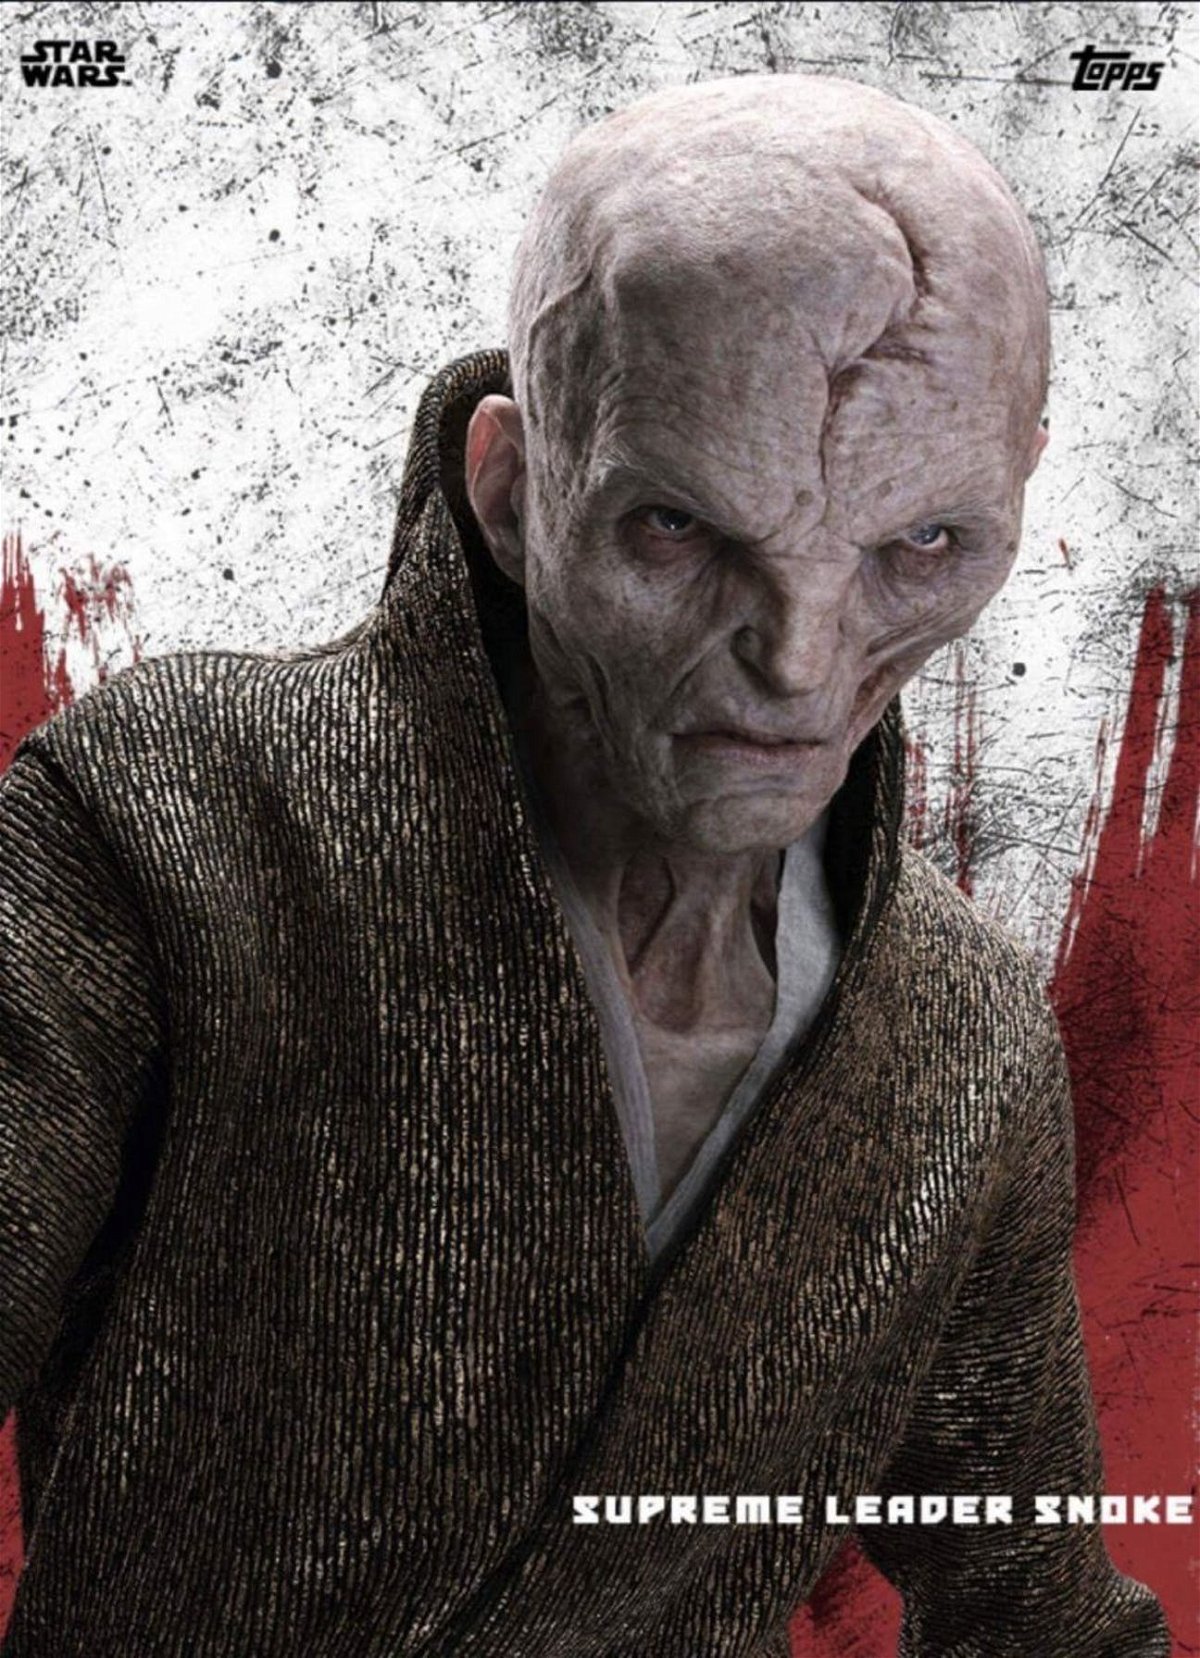 Star Wars — immagine del Leader Supremo Snoke